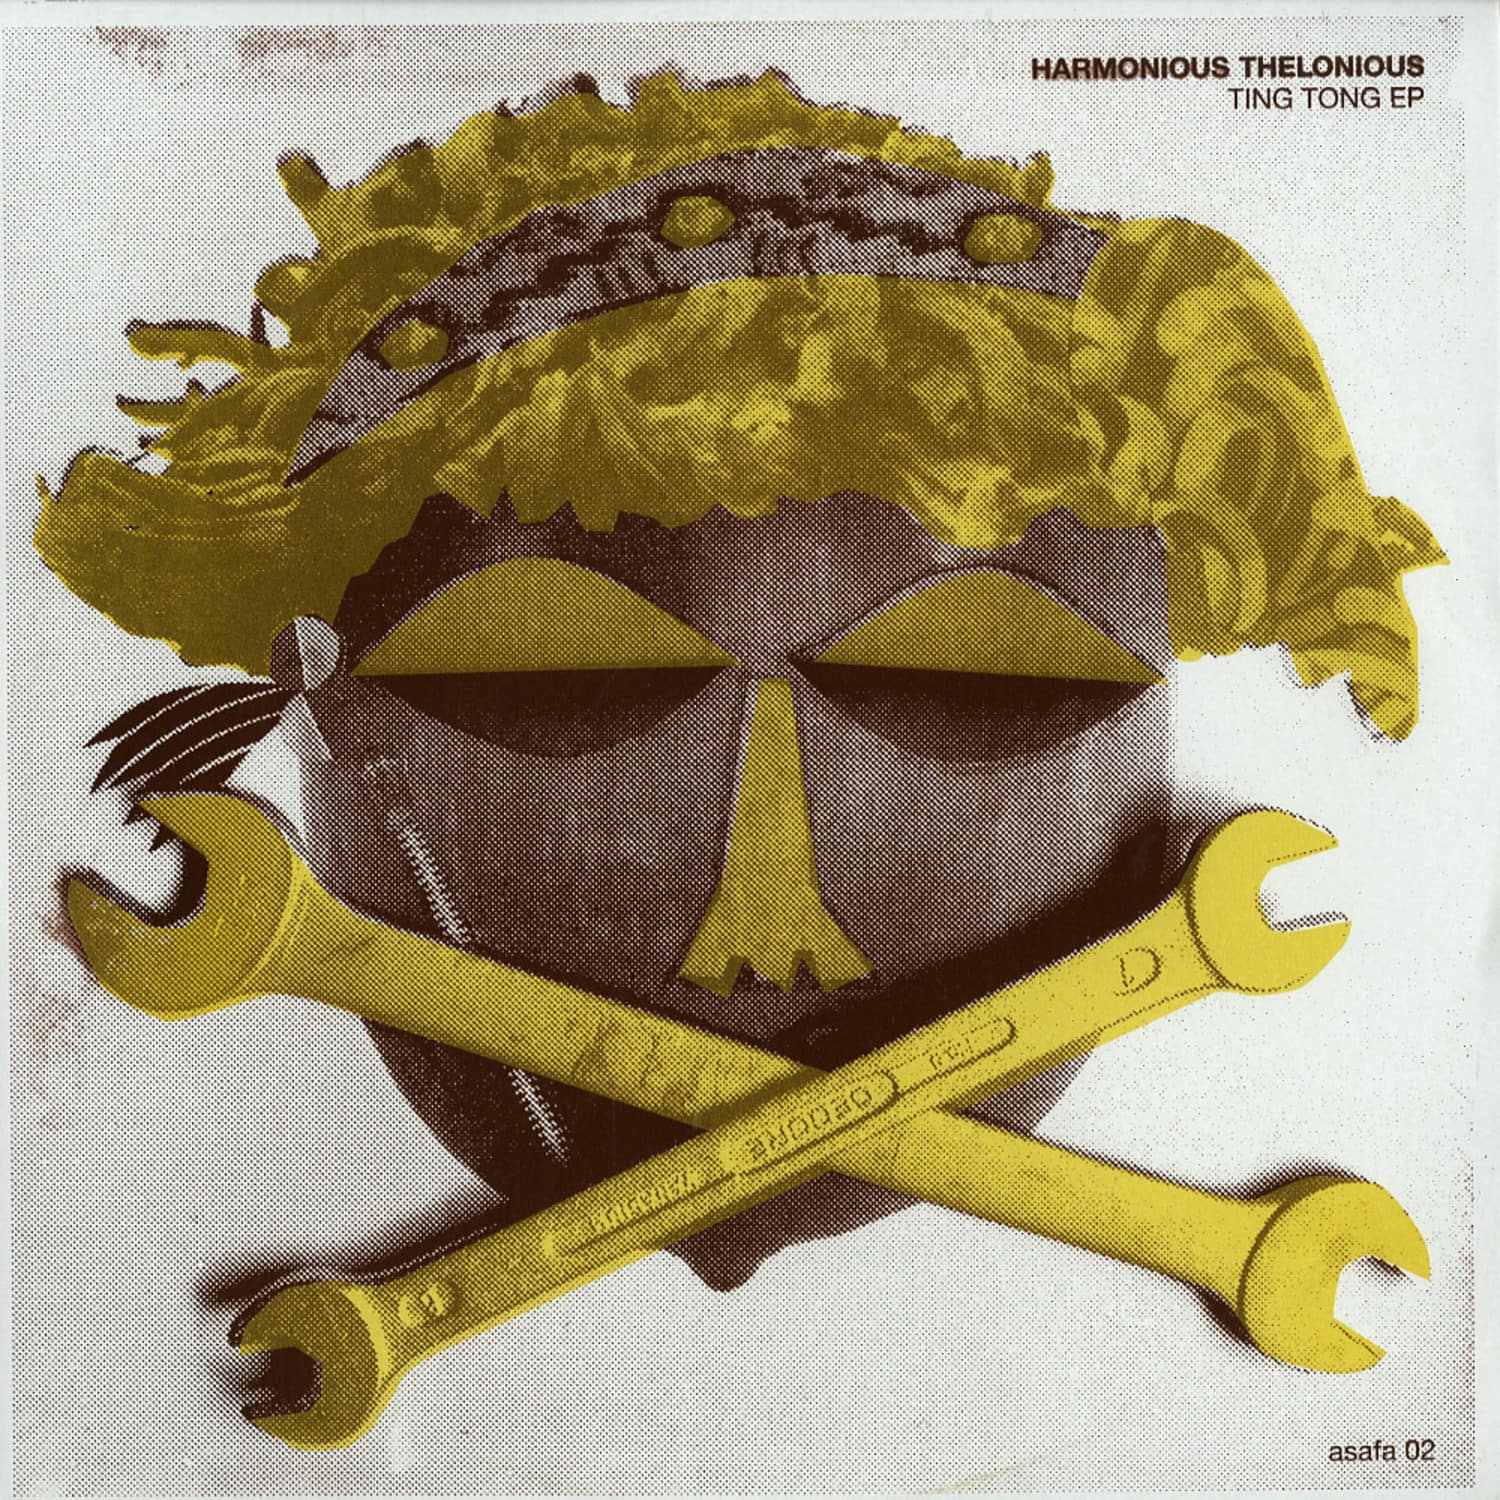 Harmonious Thelonious - TING TONG EP